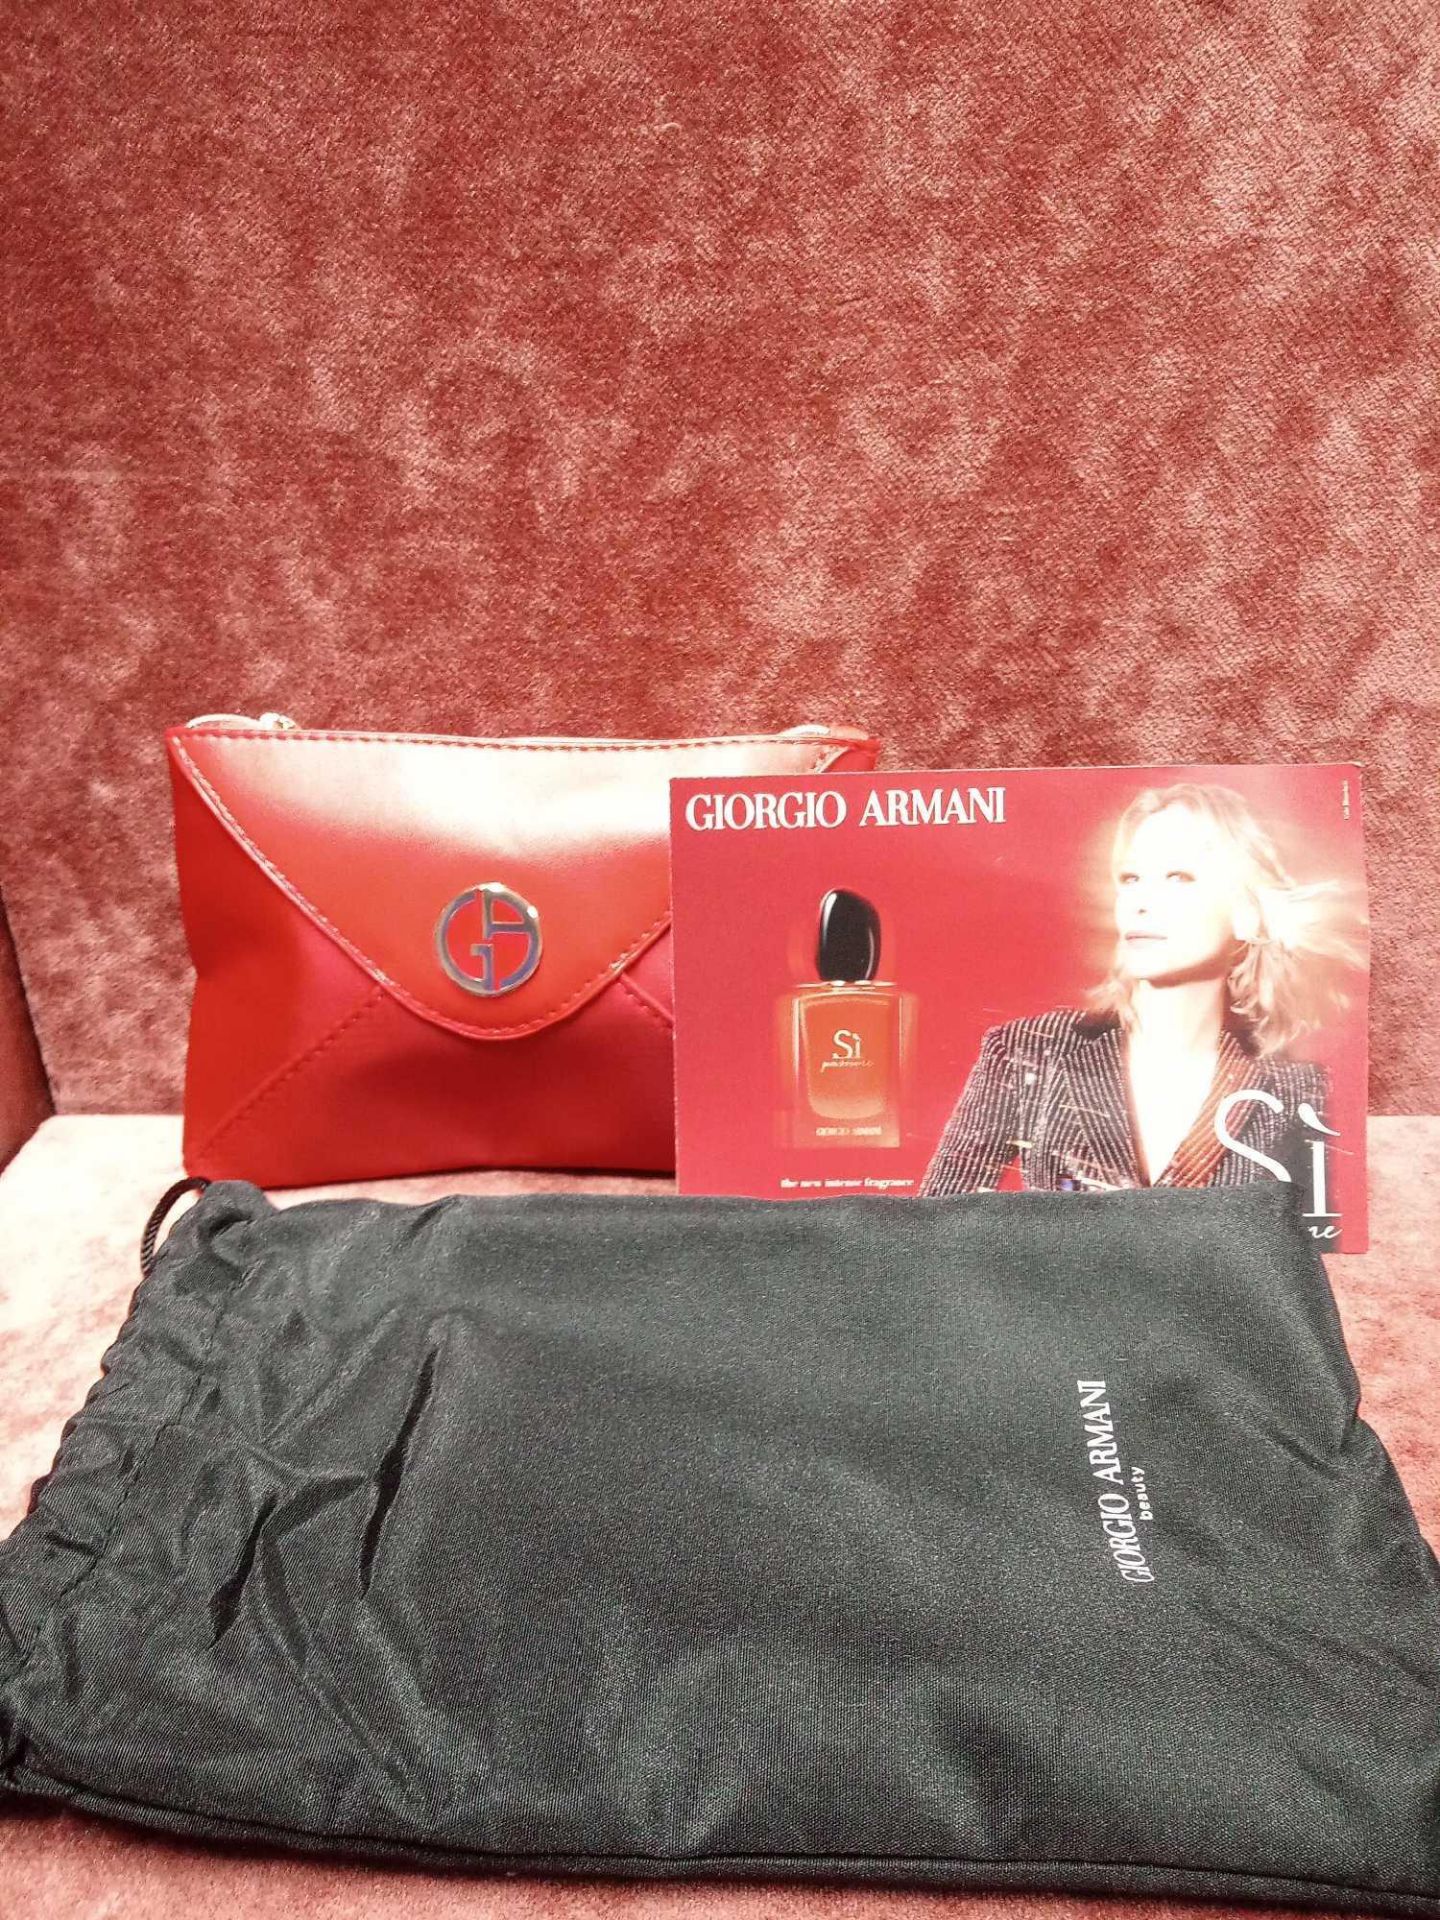 RRP £70 Brand New Giorgio Armani Beauty Si Passione Intense Gift Set To Contain Giorgio Armani Red P - Image 2 of 3